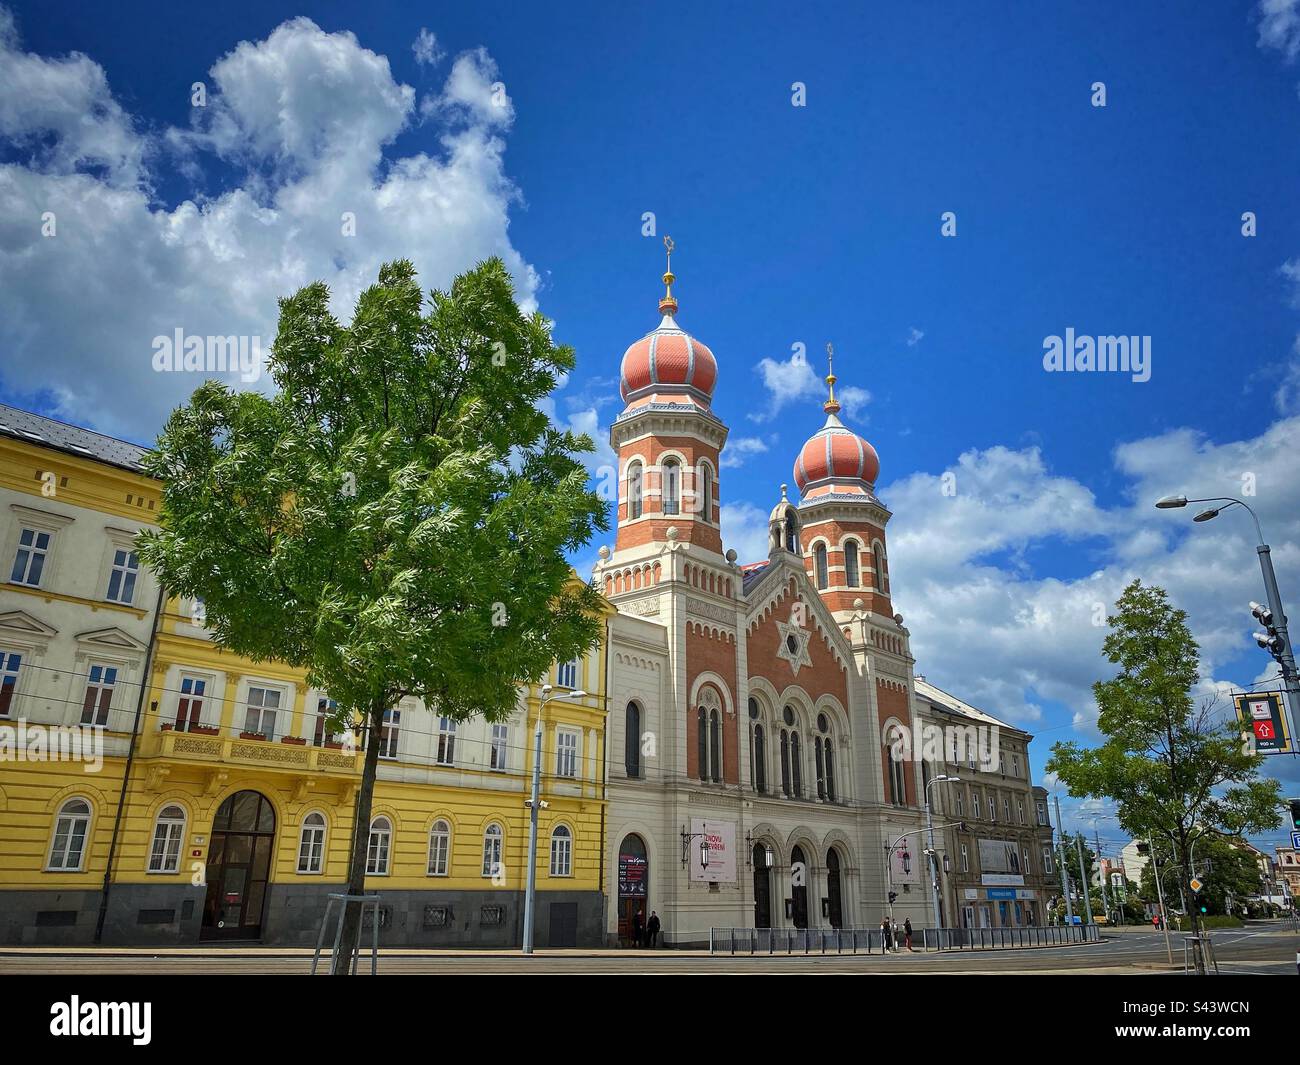 La grande synagogue de Pilsen construite au 19th siècle avec des arbres et des bâtiments jaunes, République tchèque. Banque D'Images